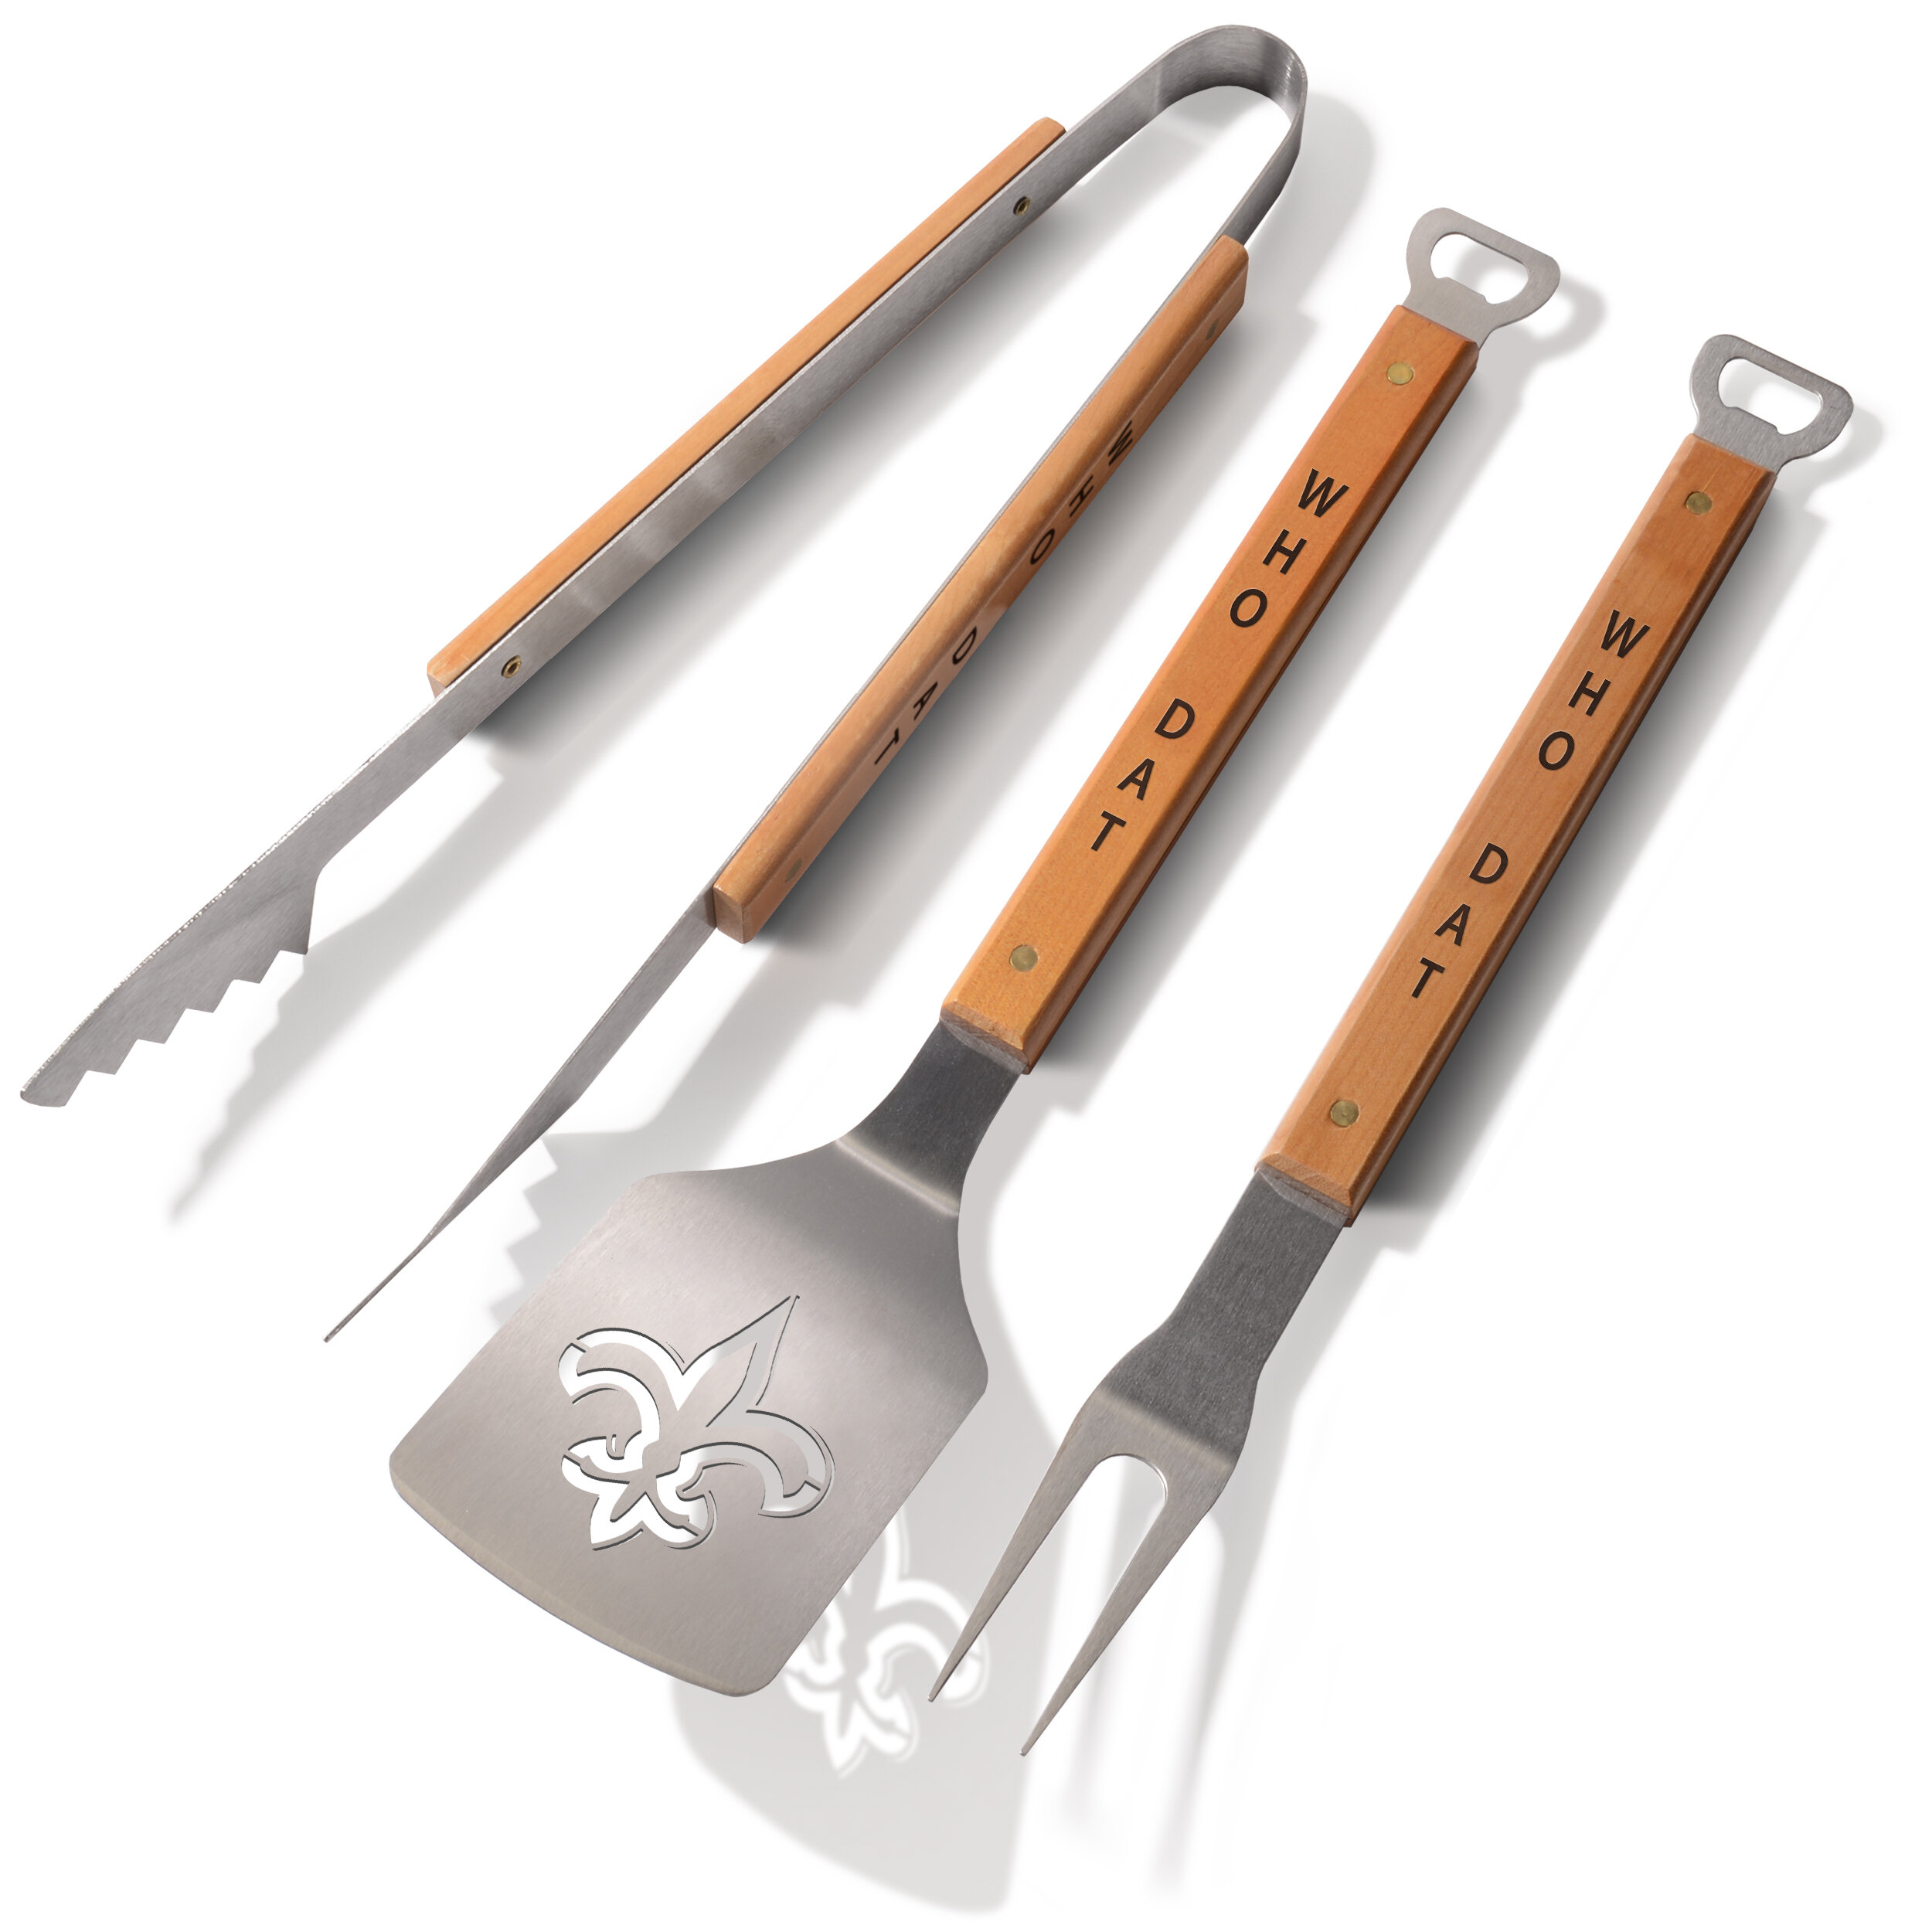 https://assets.wfcdn.com/im/43723432/compr-r85/8374/83746381/spatule-de-gril-barbecue-fleur-de-lis-classic-series.jpg